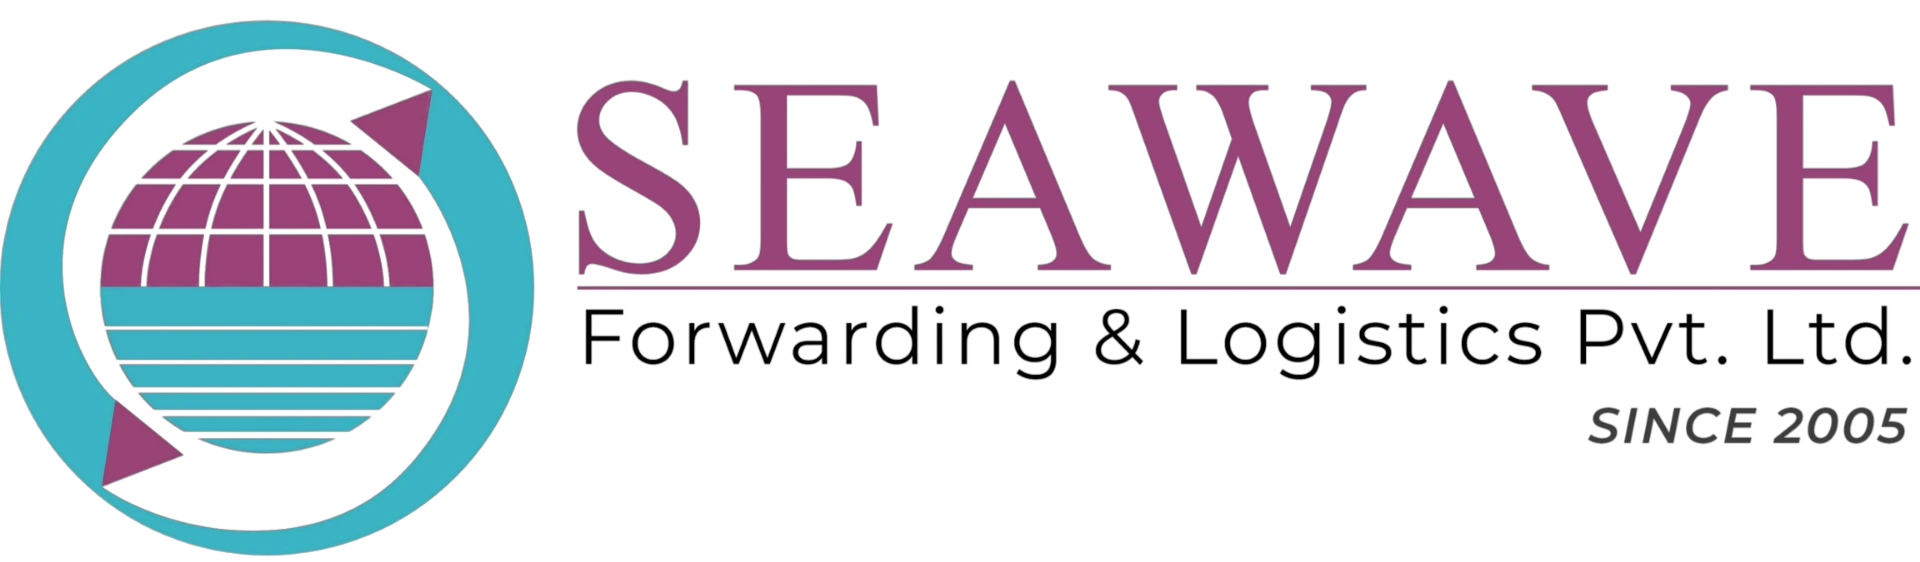 seawave-black-logo